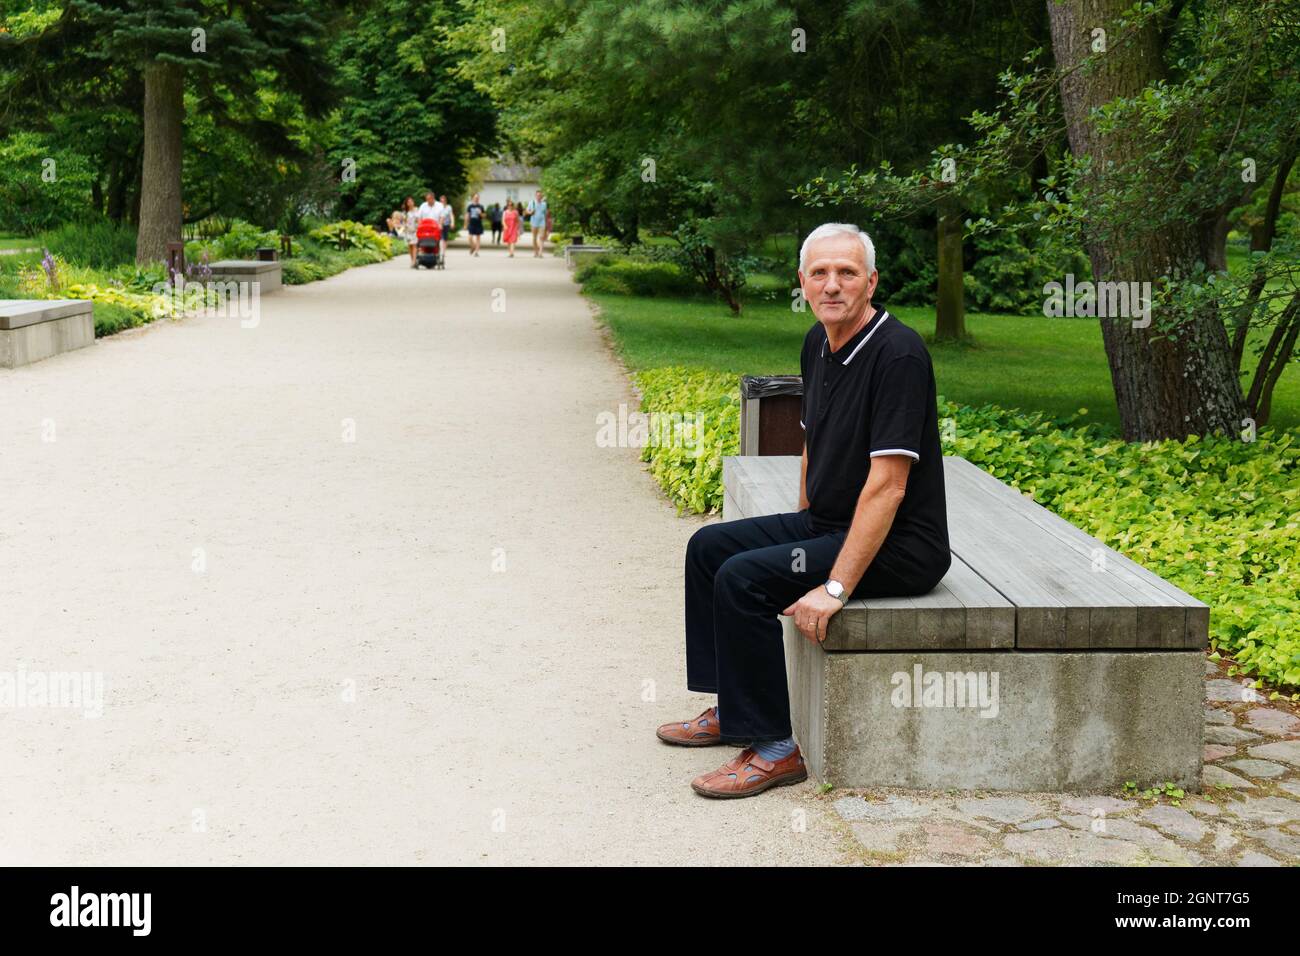 Ganzkörperansicht eines älteren Mannes, der auf einer Parkbank sitzt und die Kamera anschaut Stockfoto